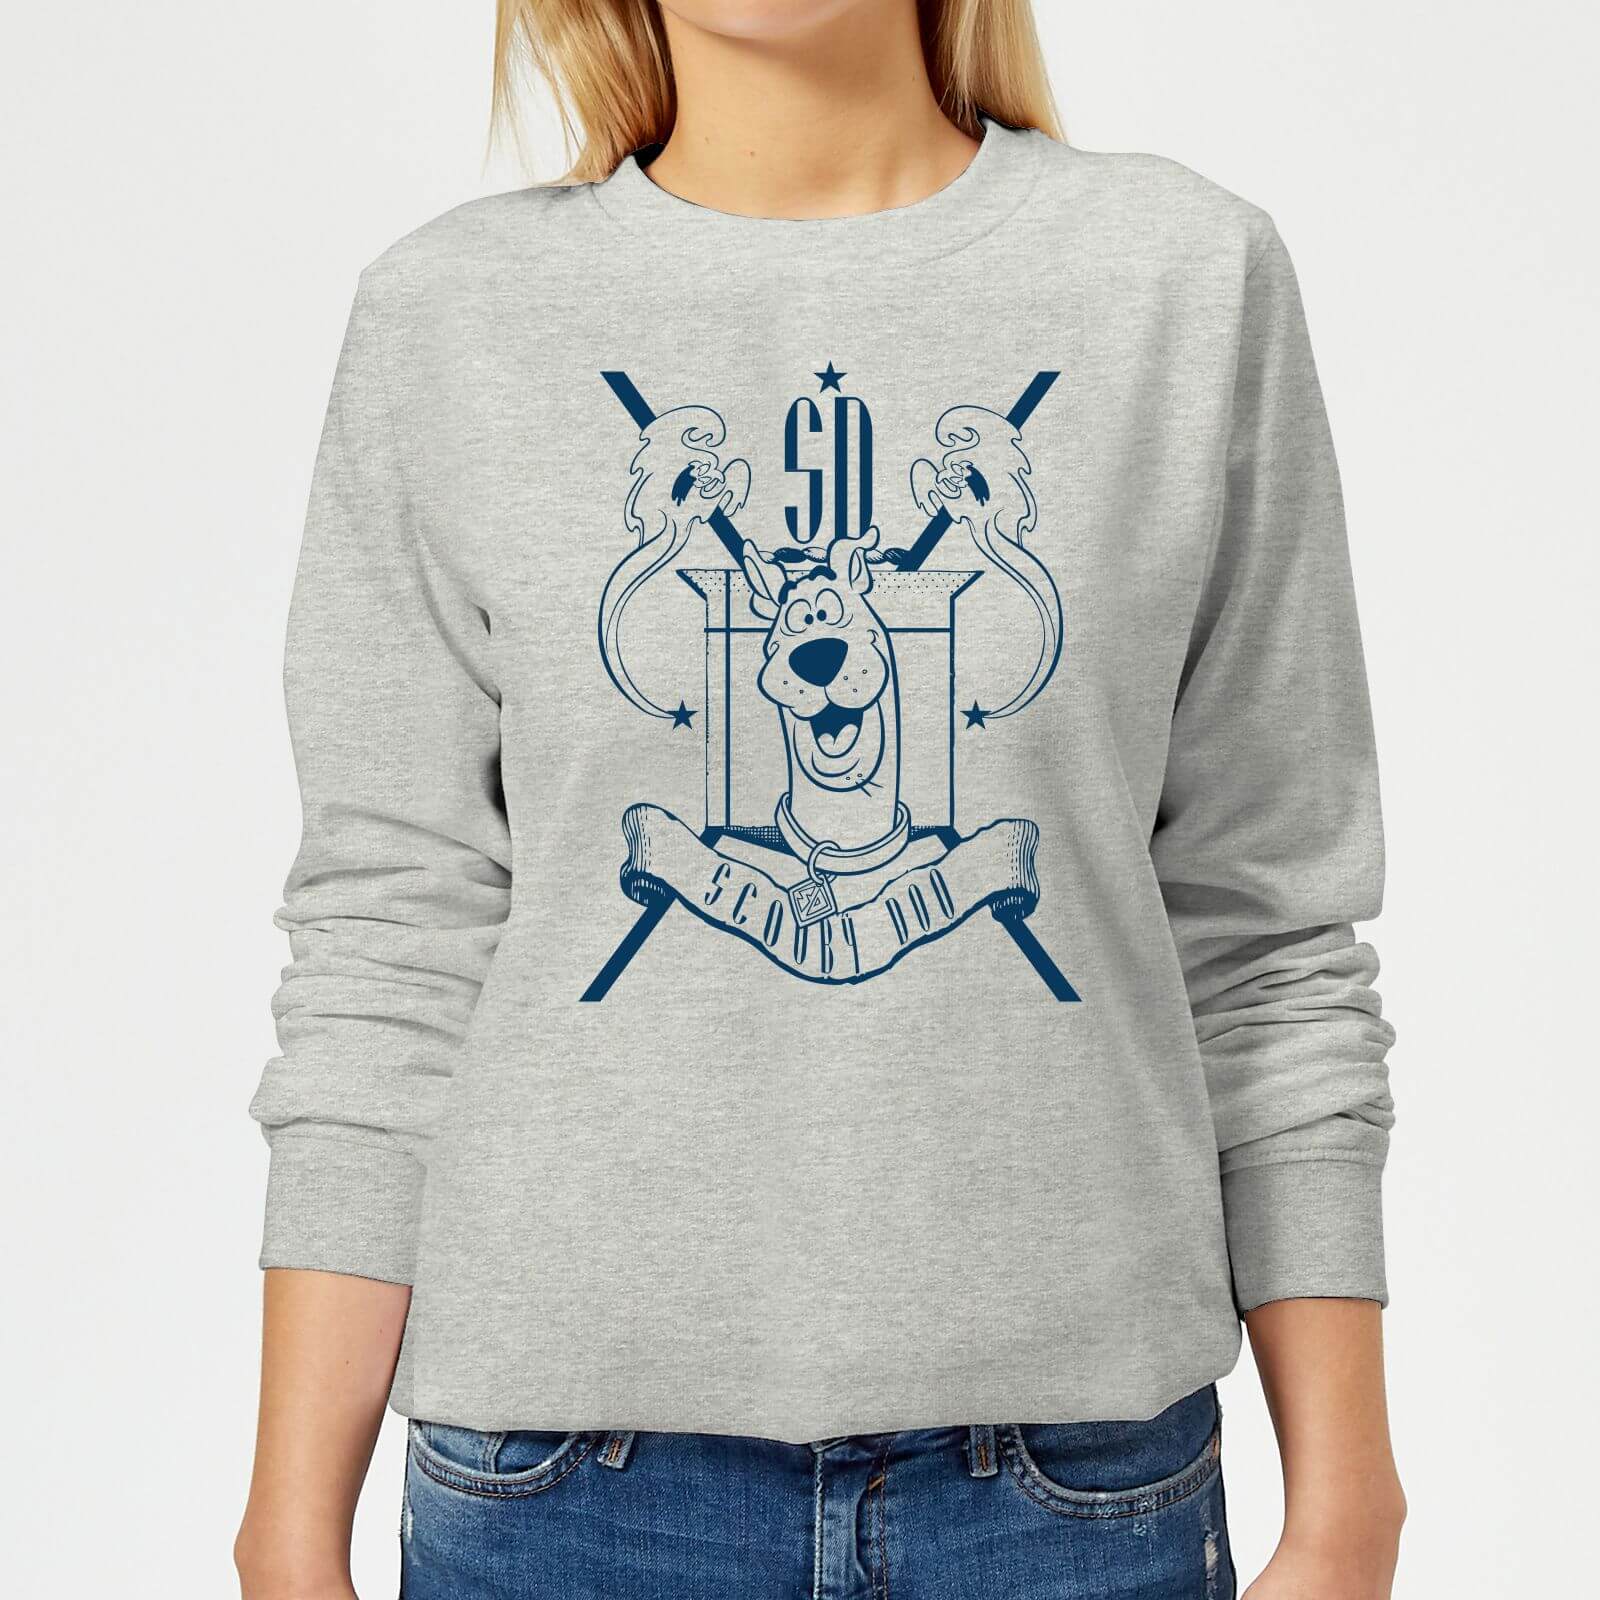 Scooby Doo Coat Of Arms Women's Sweatshirt - Grey - L - Grey